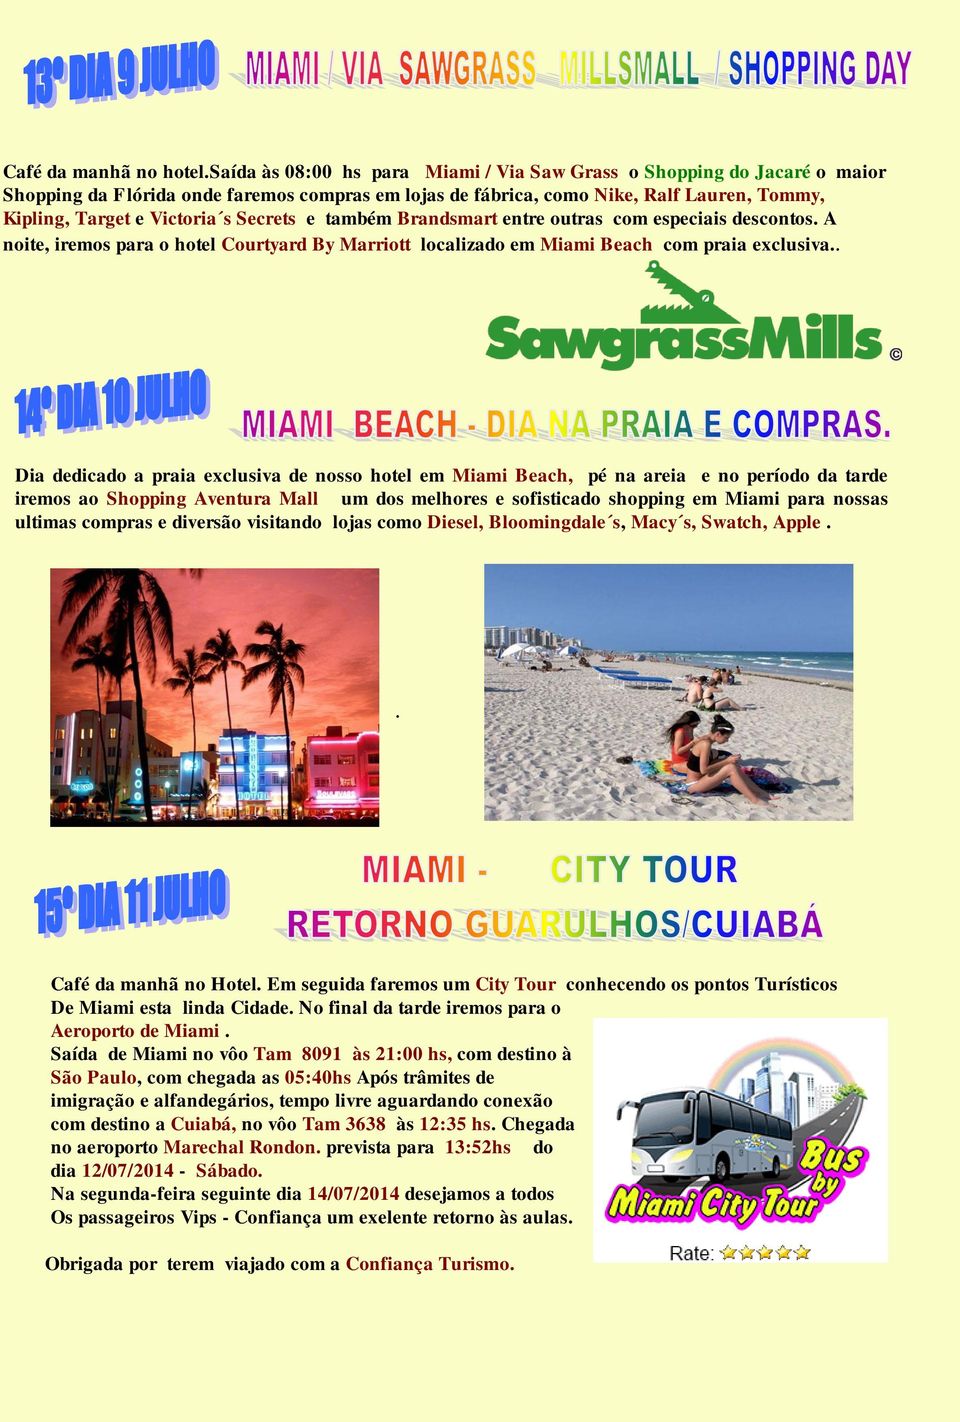 Secrets e também Brandsmart entre outras com especiais descontos. A noite, iremos para o hotel Courtyard By Marriott localizado em Miami Beach com praia exclusiva.